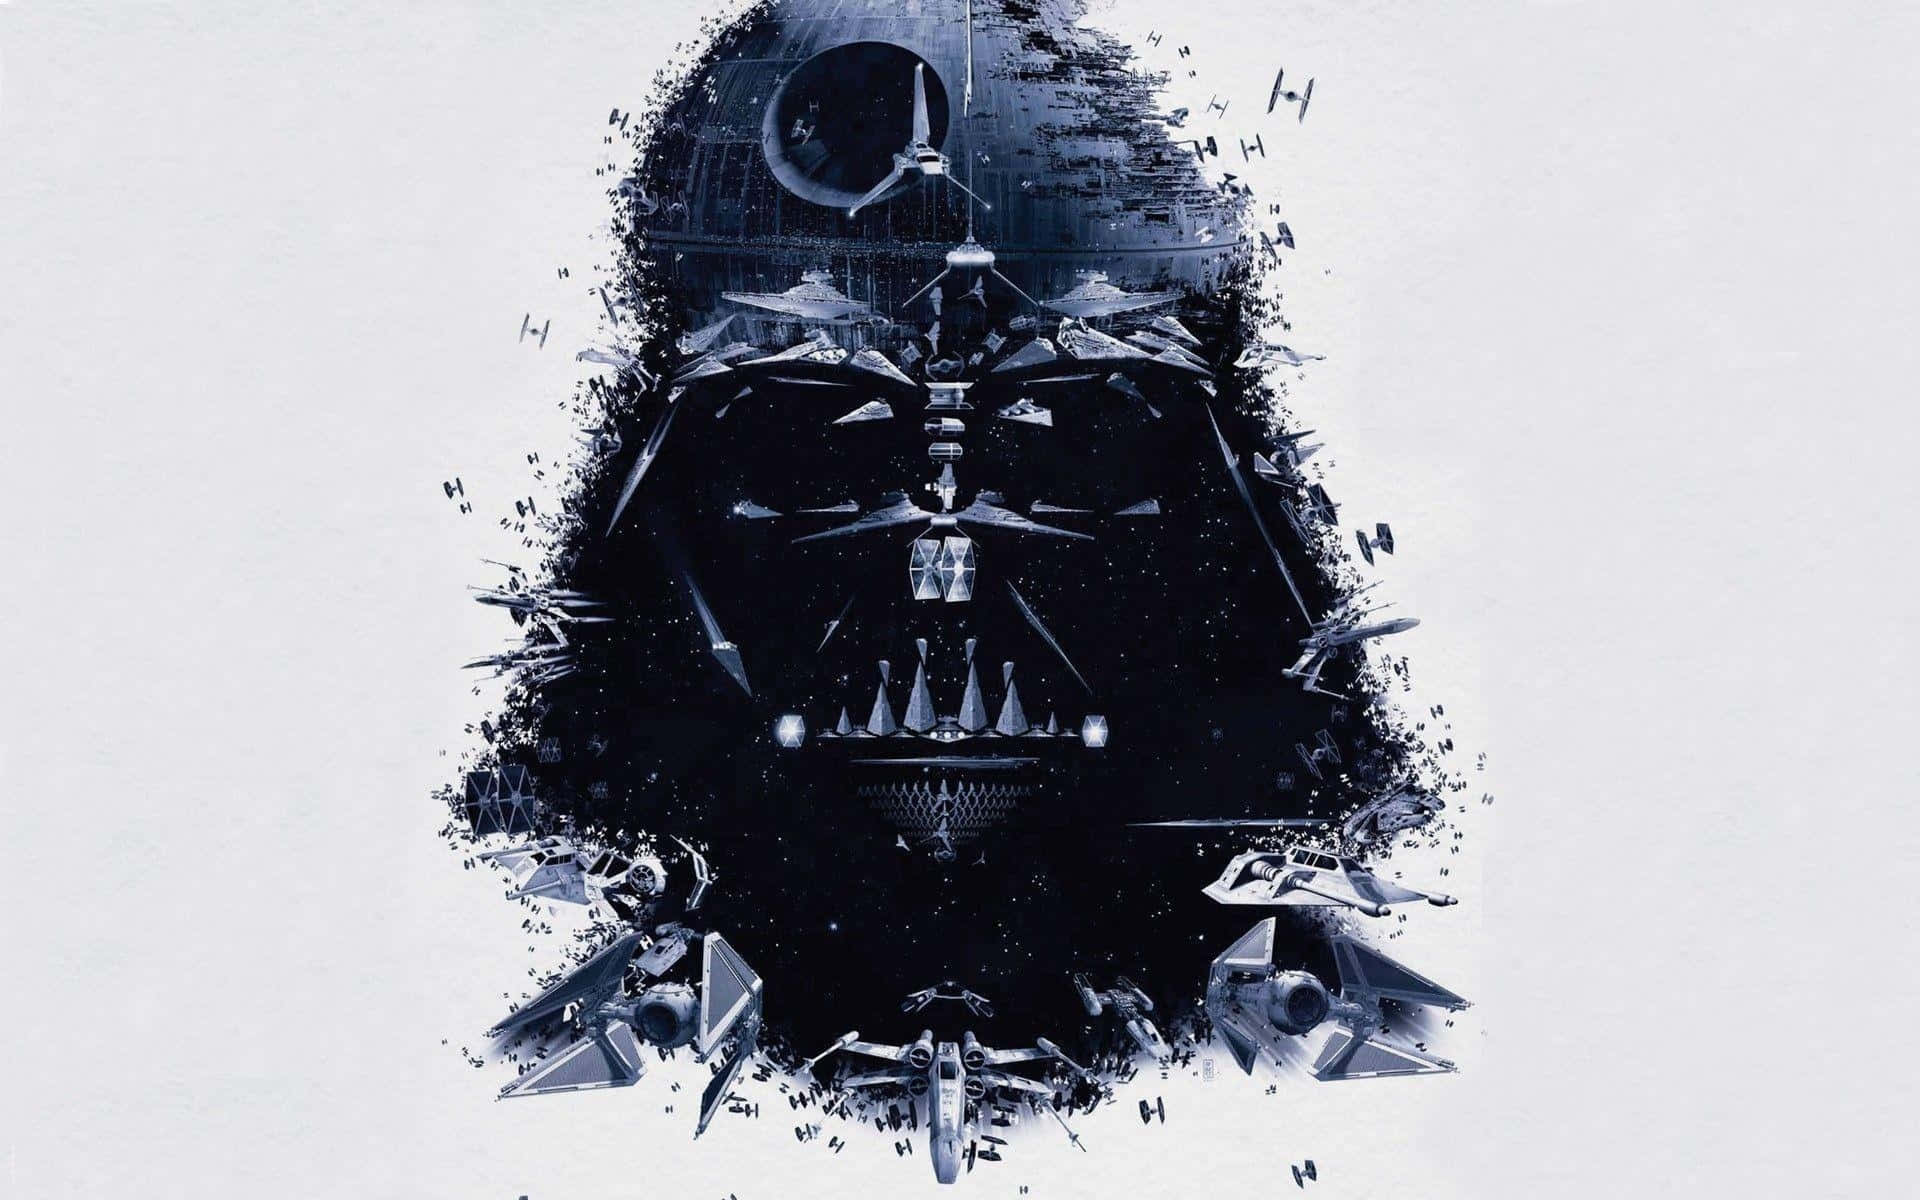 Imágenesde Darth Vader.